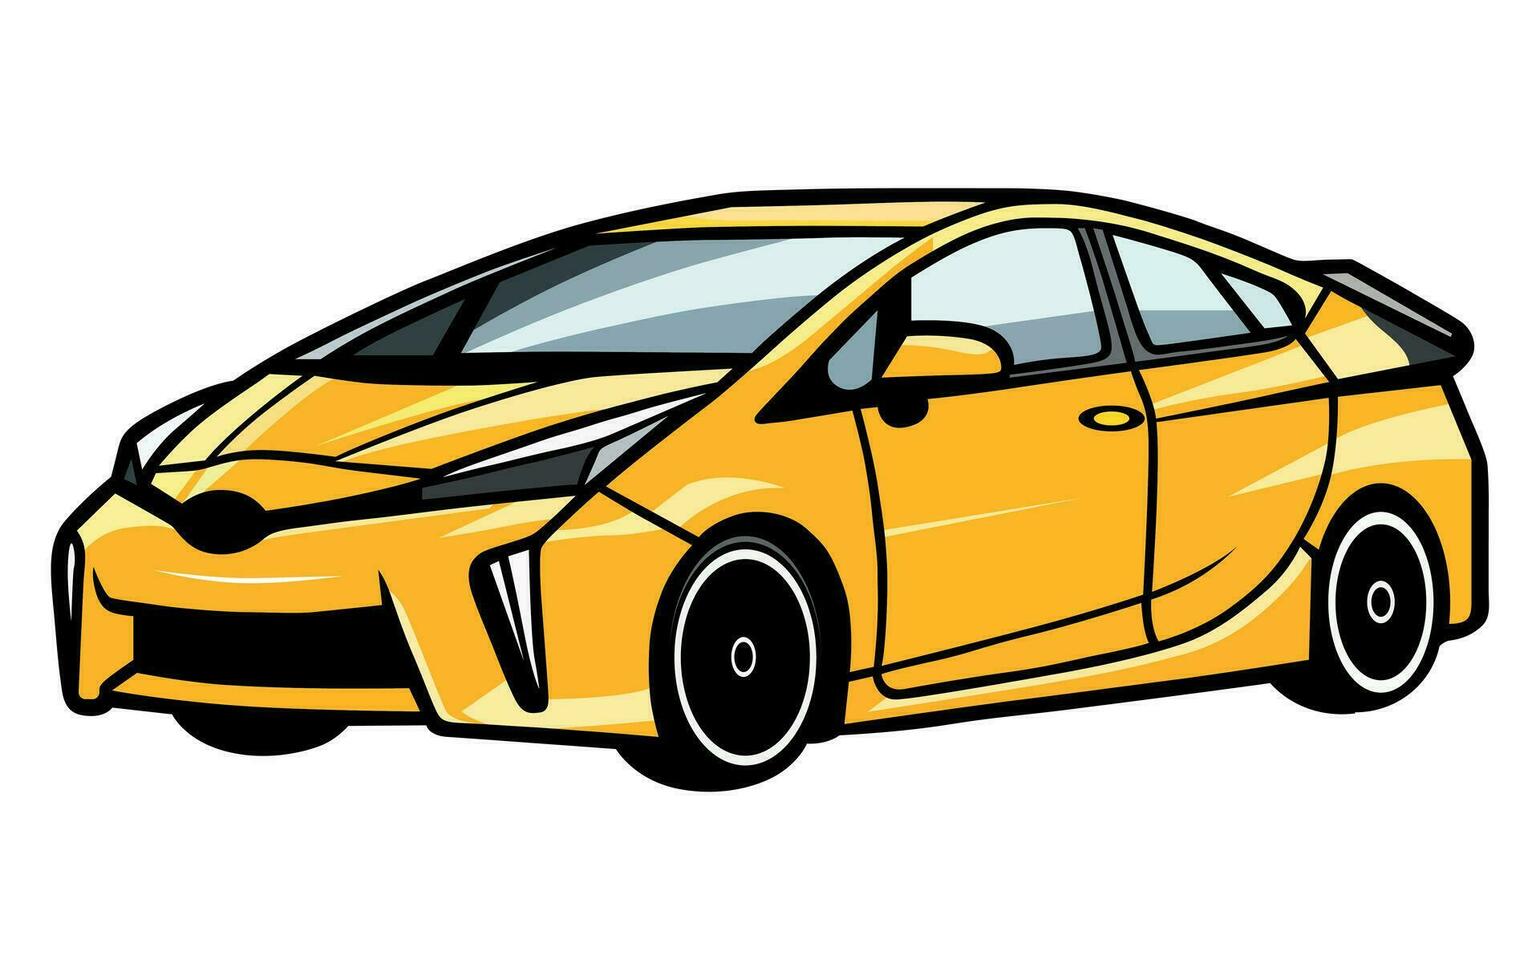 prius auto's vector illustratie, vector illustratie van een populair hybride auto,